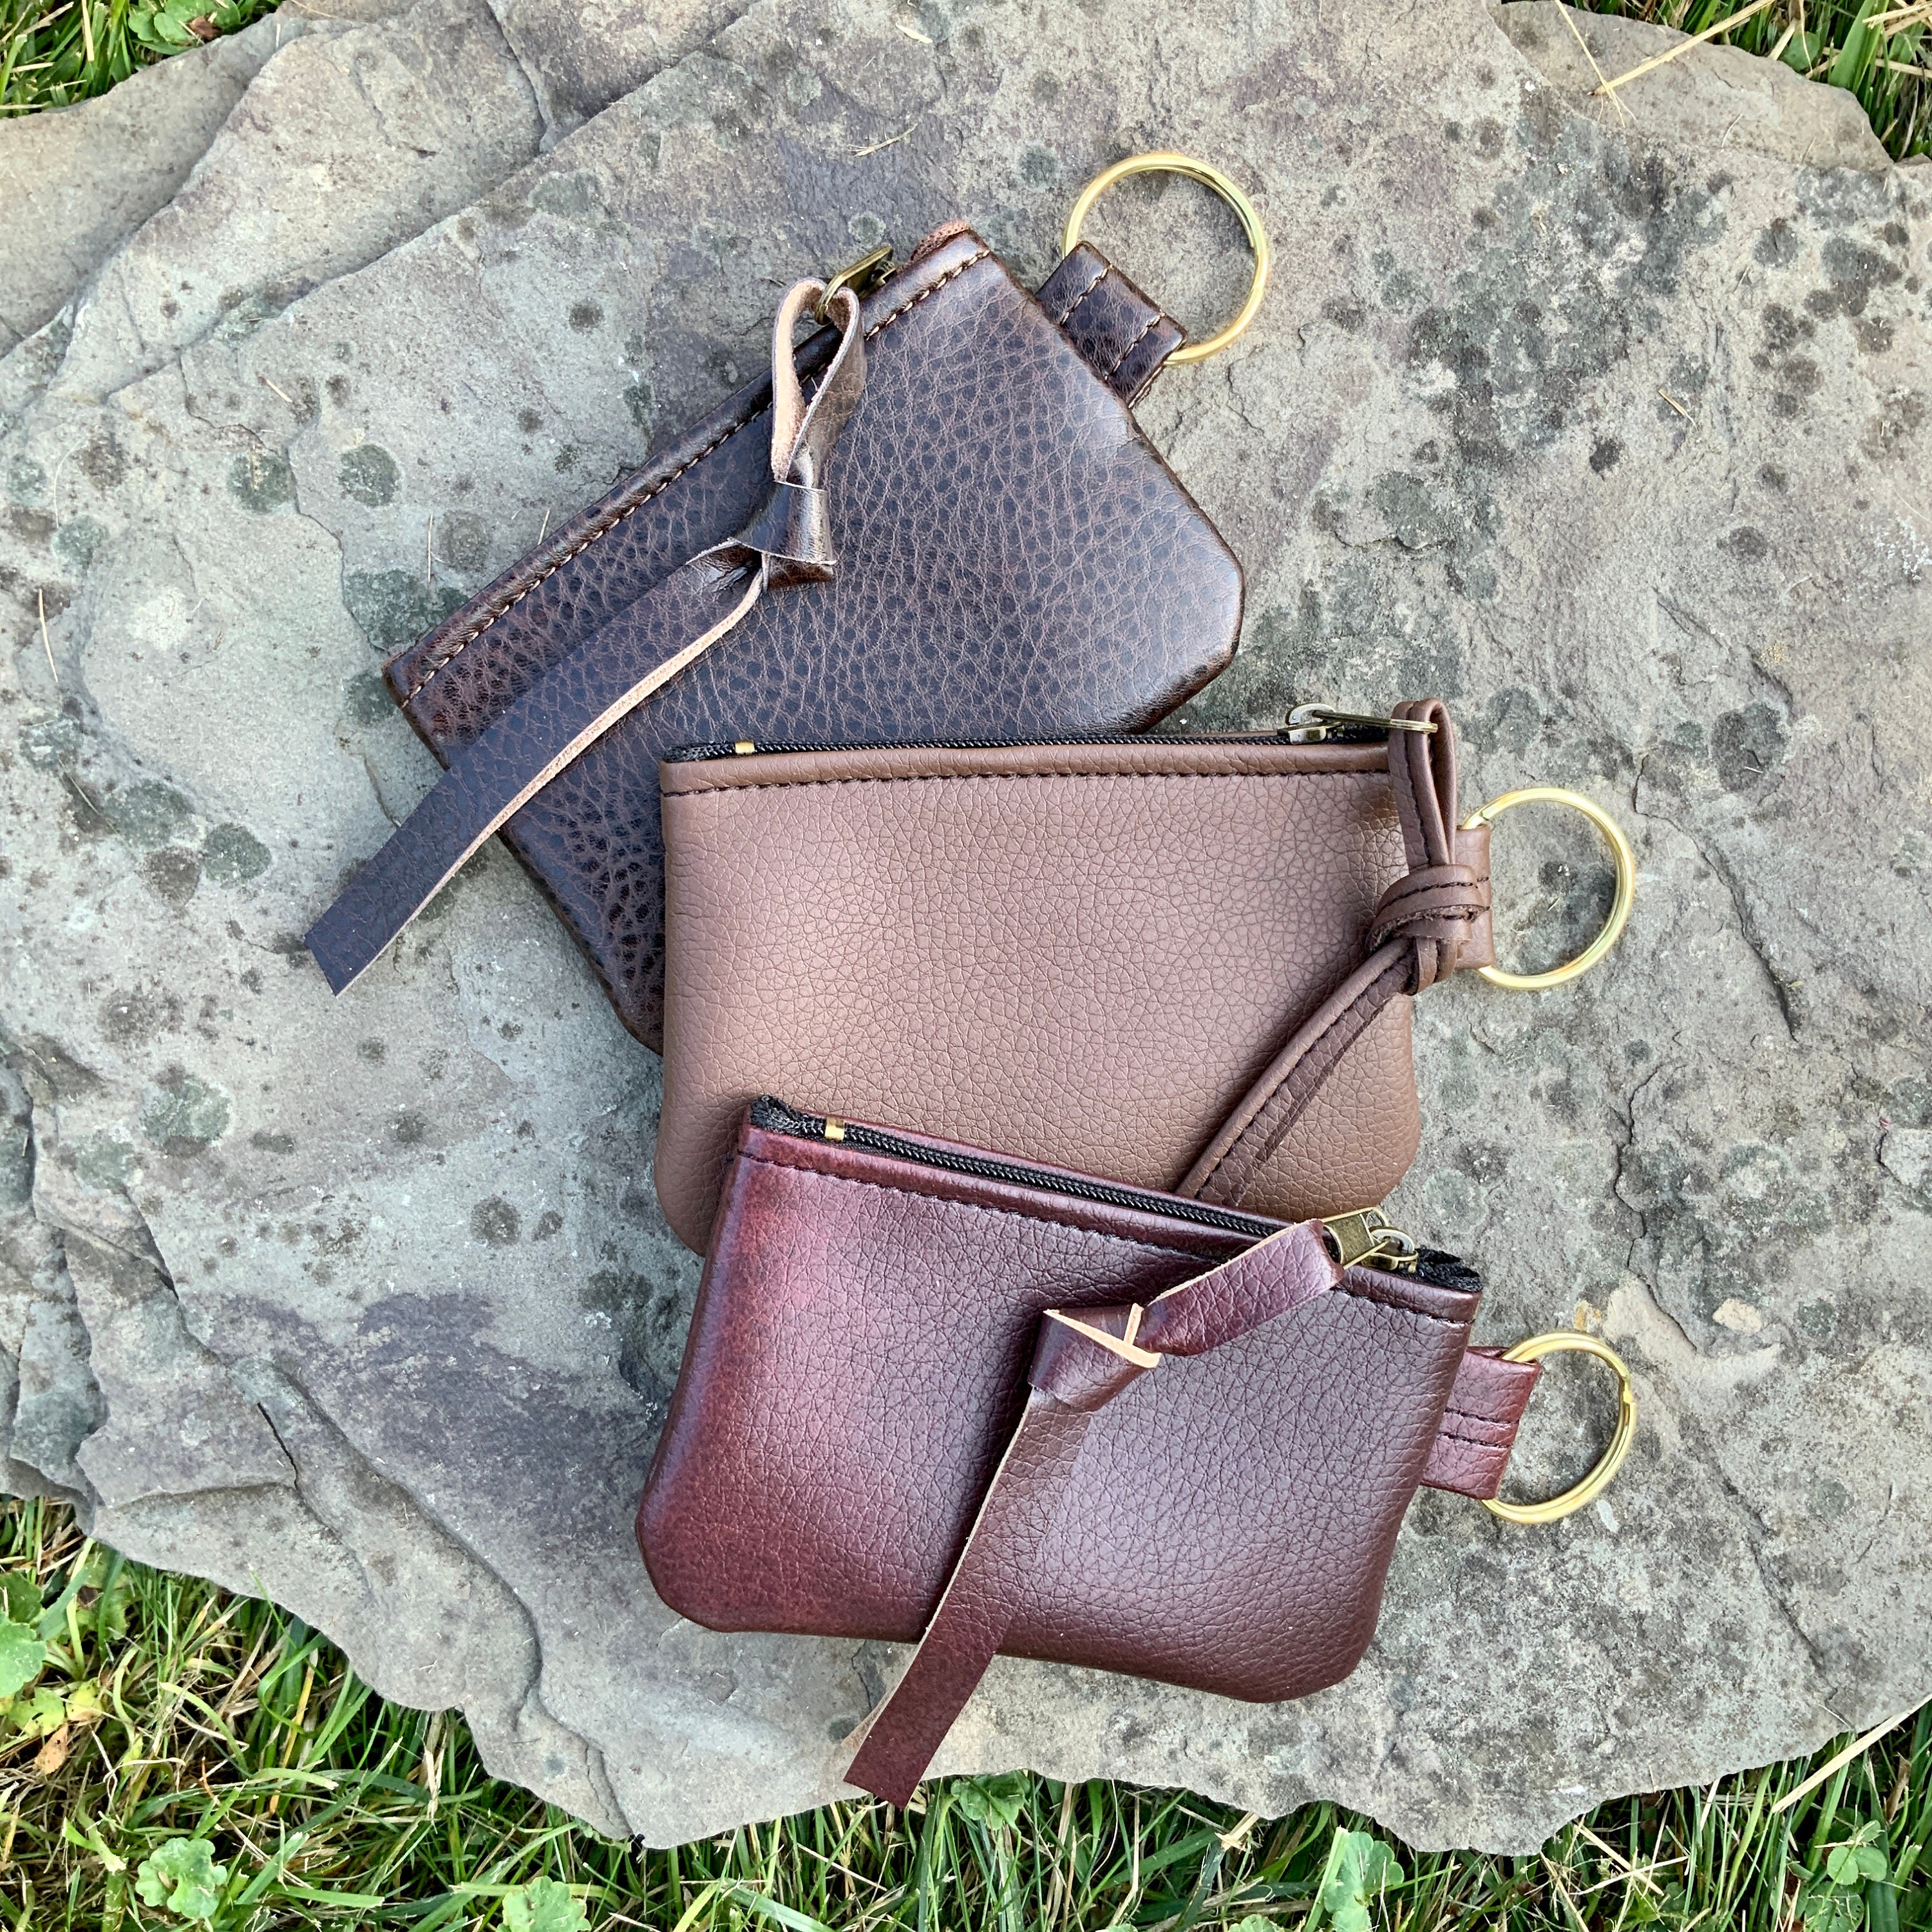 Vegan Leather Wallet Key Chain • Claudette